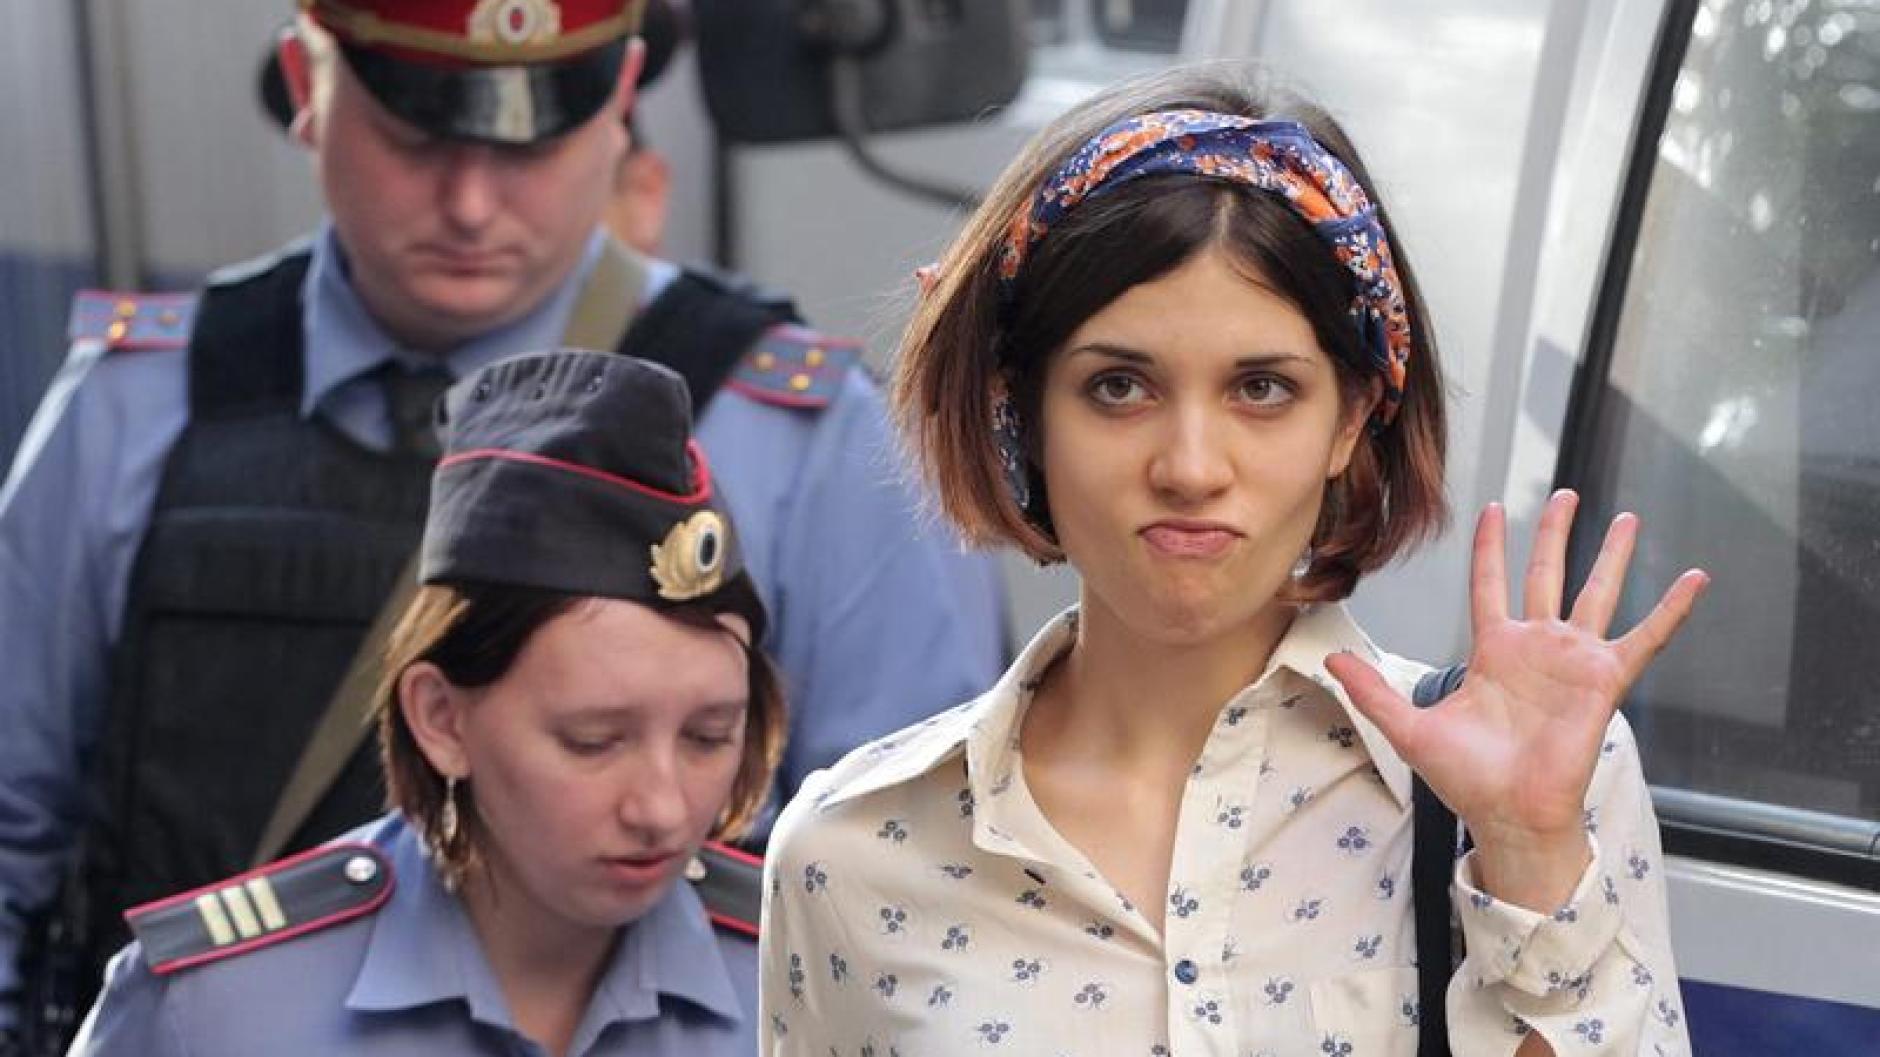 Russland Pussy Riot Mitglied Kritisiert Haftbedingungen In Arbeitslager Augsburger Allgemeine